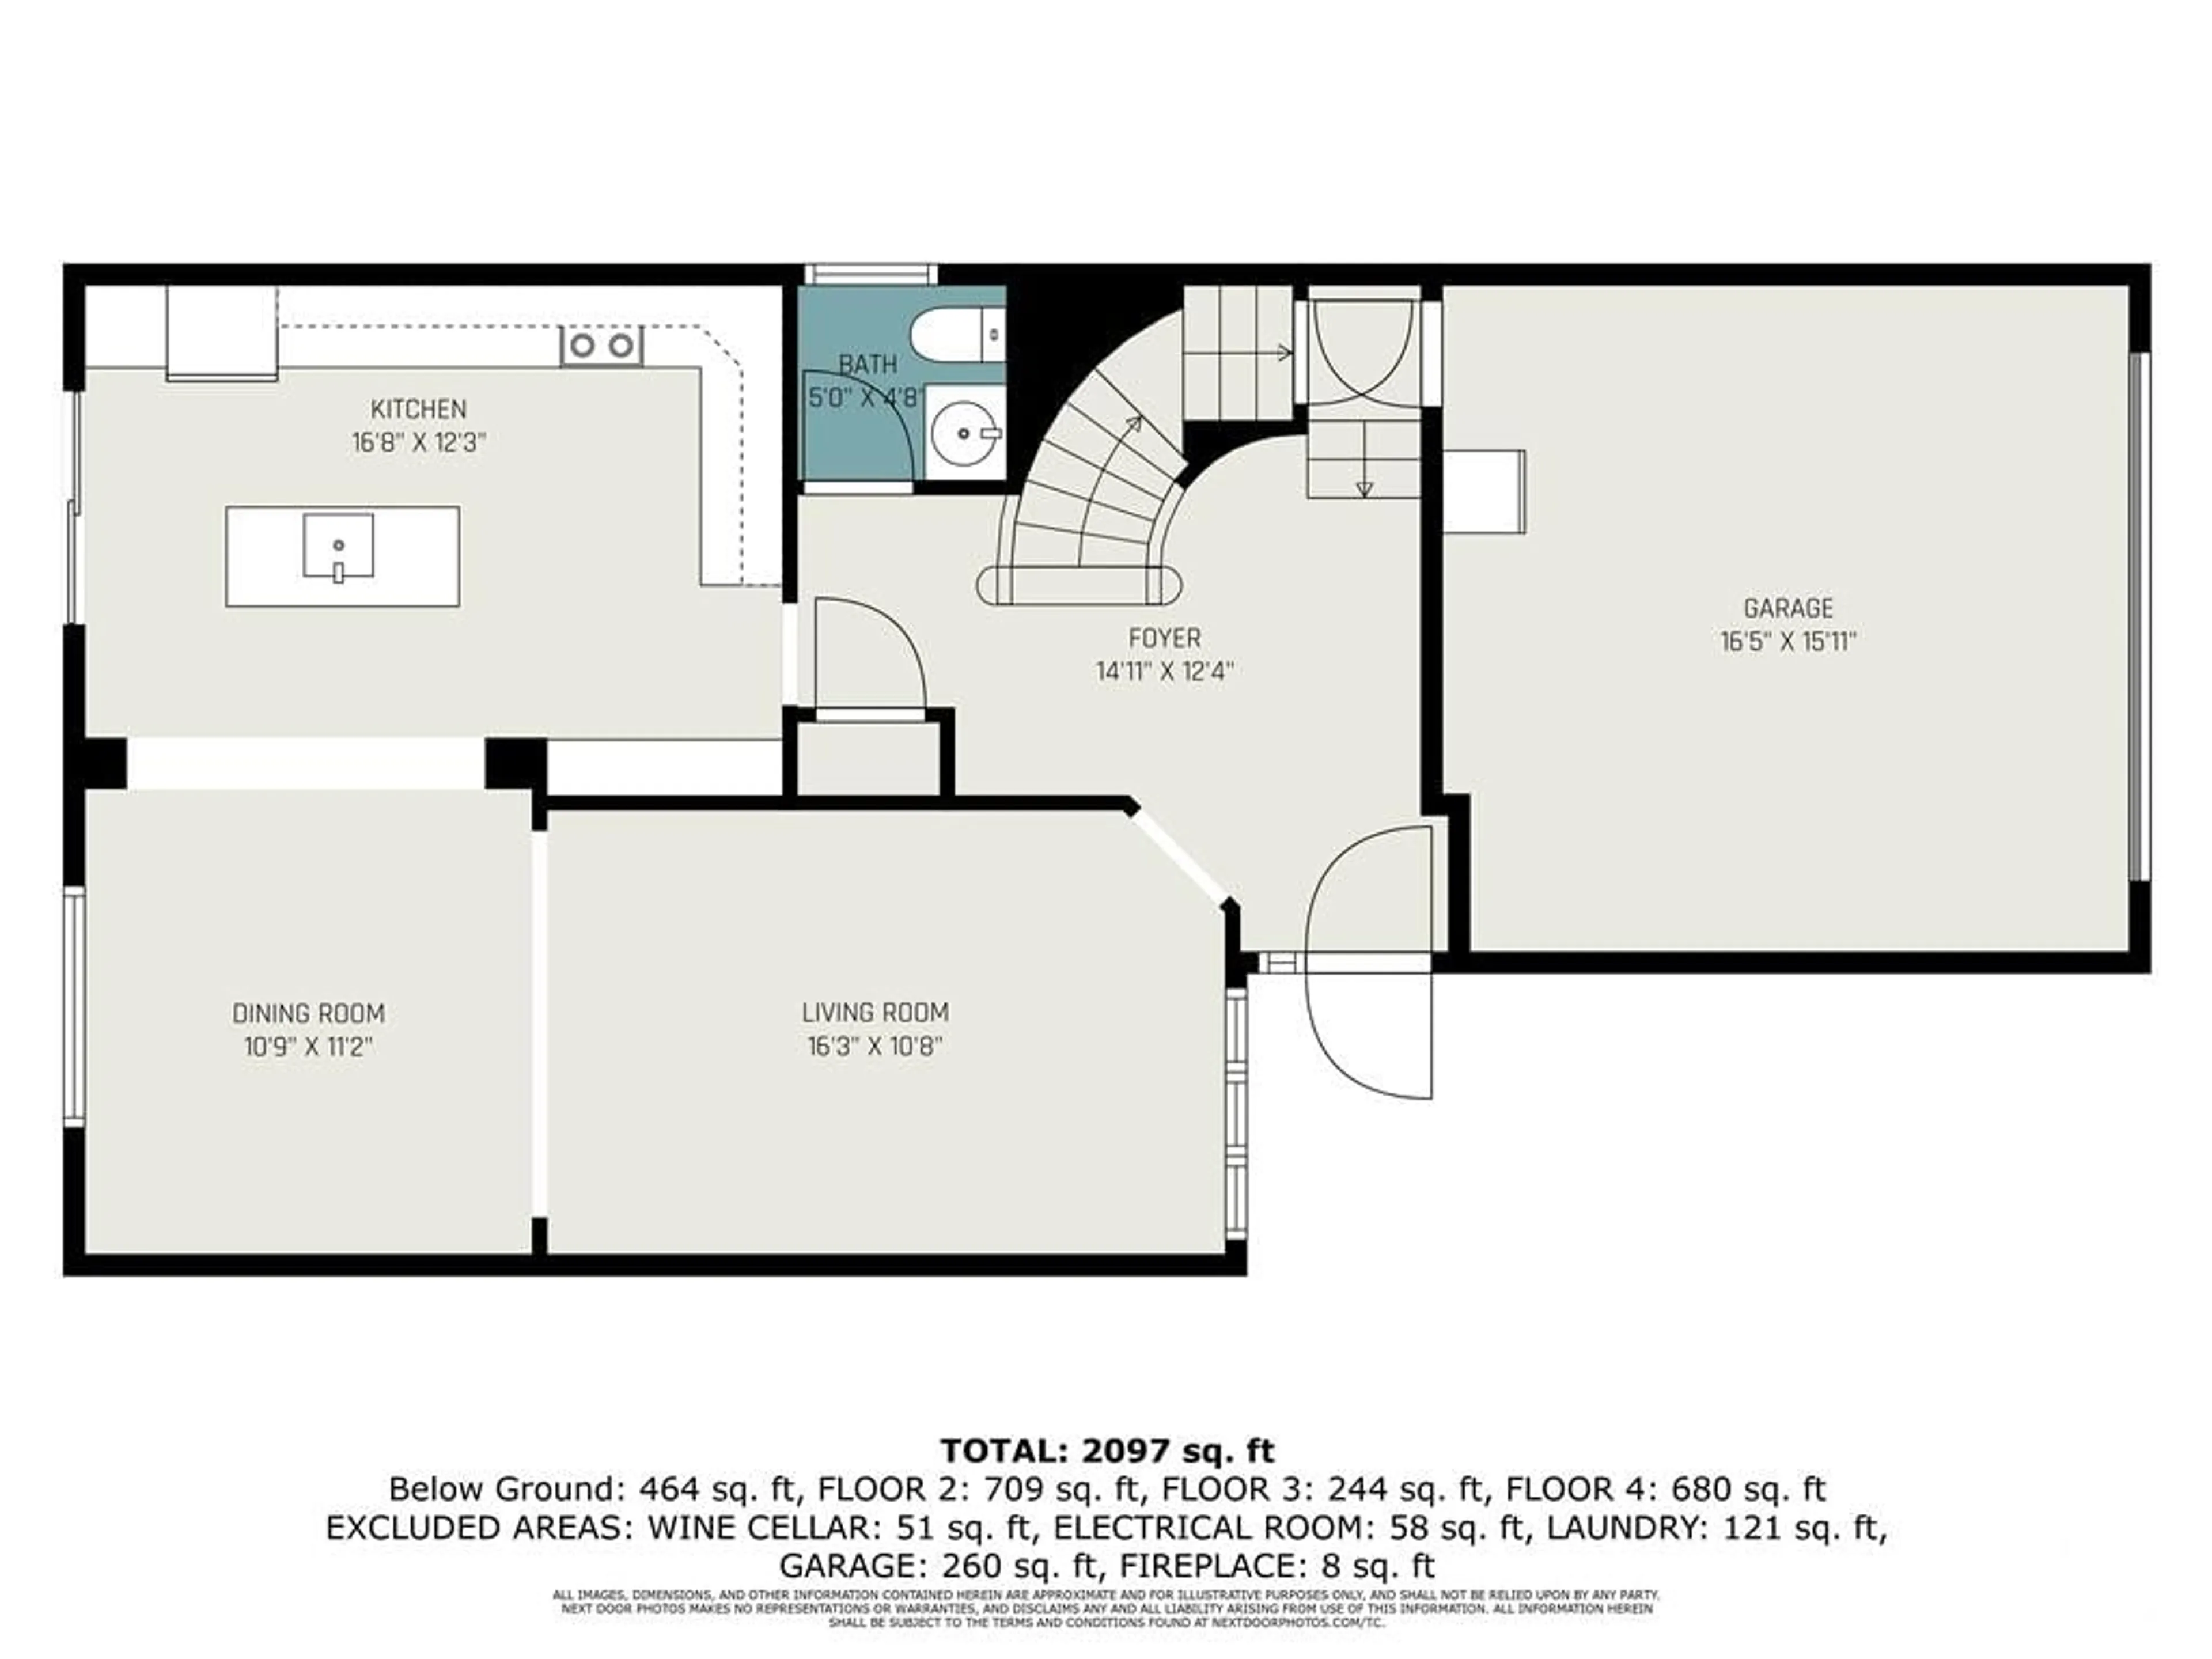 Floor plan for 2081 LEGRAND Cres, Ottawa Ontario K1E 3T6